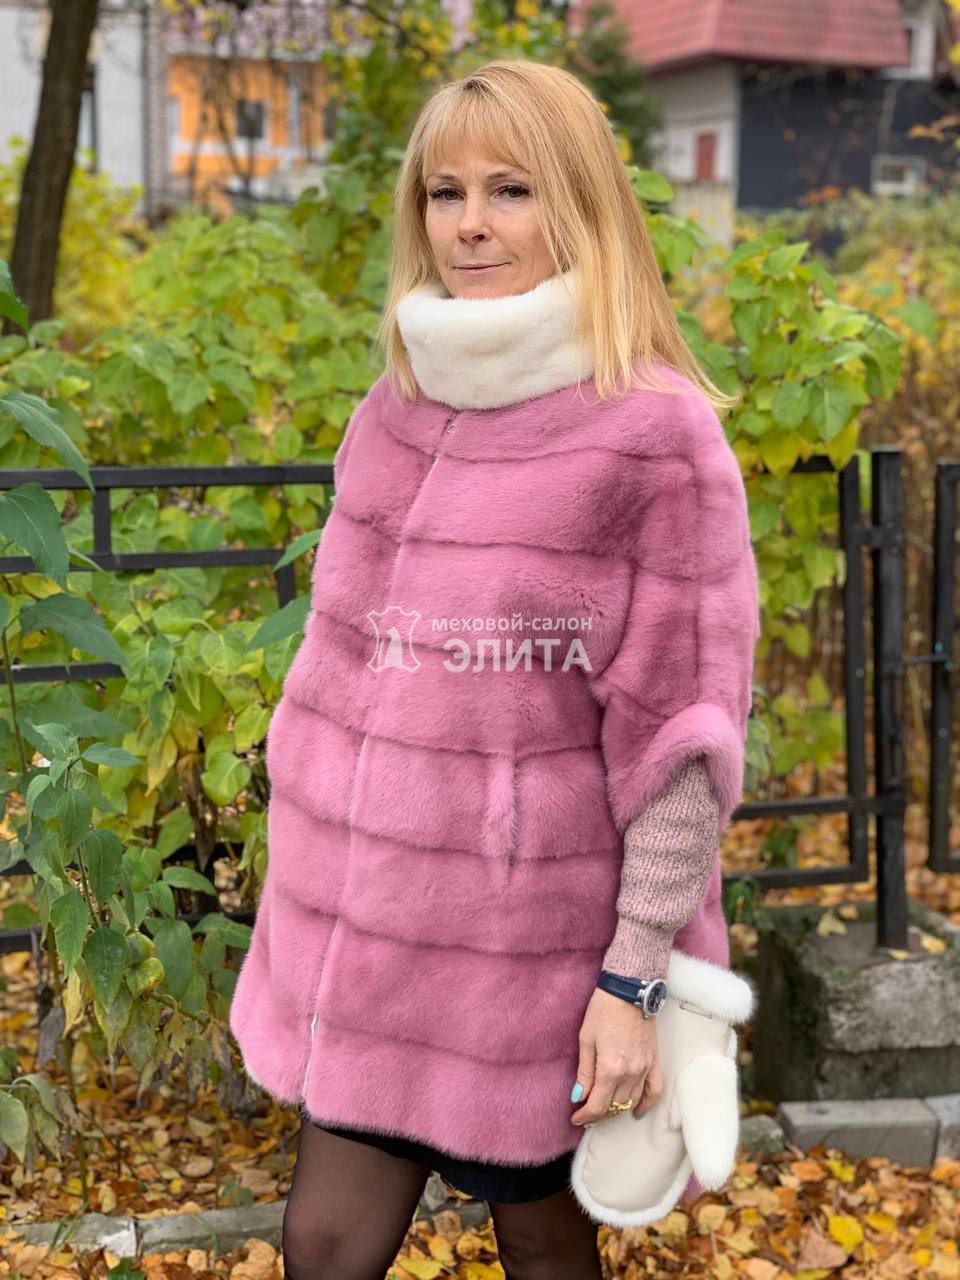 Норковый свитер S-1705 р-р 42-52., цена 58660 рублей в интернет-магазине кожи и меха ЭЛИТА. Вид 2